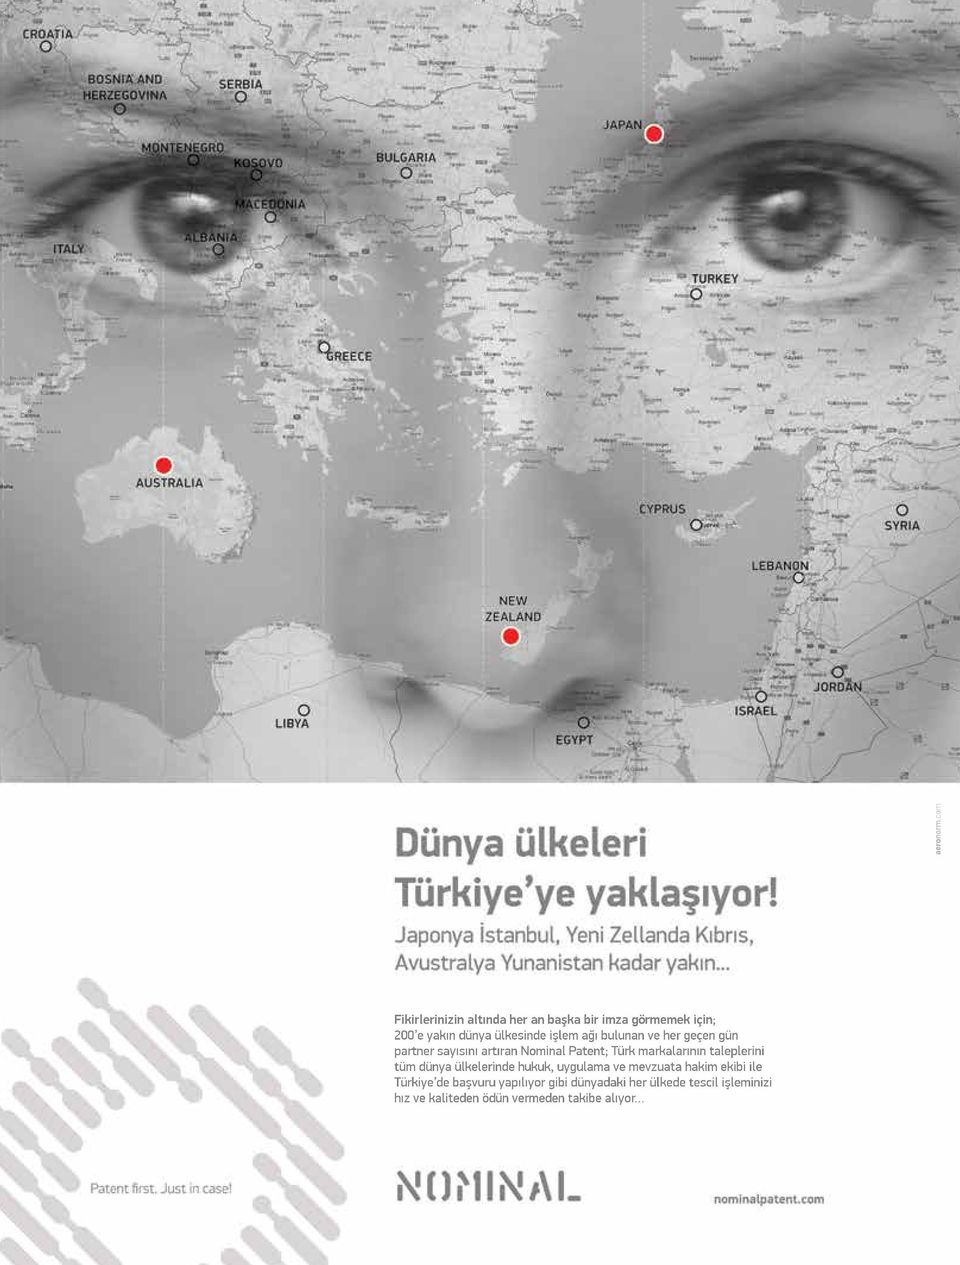 tüm dünya ülkelerinde hukuk, uygulama ve mevzuata hakim ekibi ile Türkiye de başvuru yapılıyor